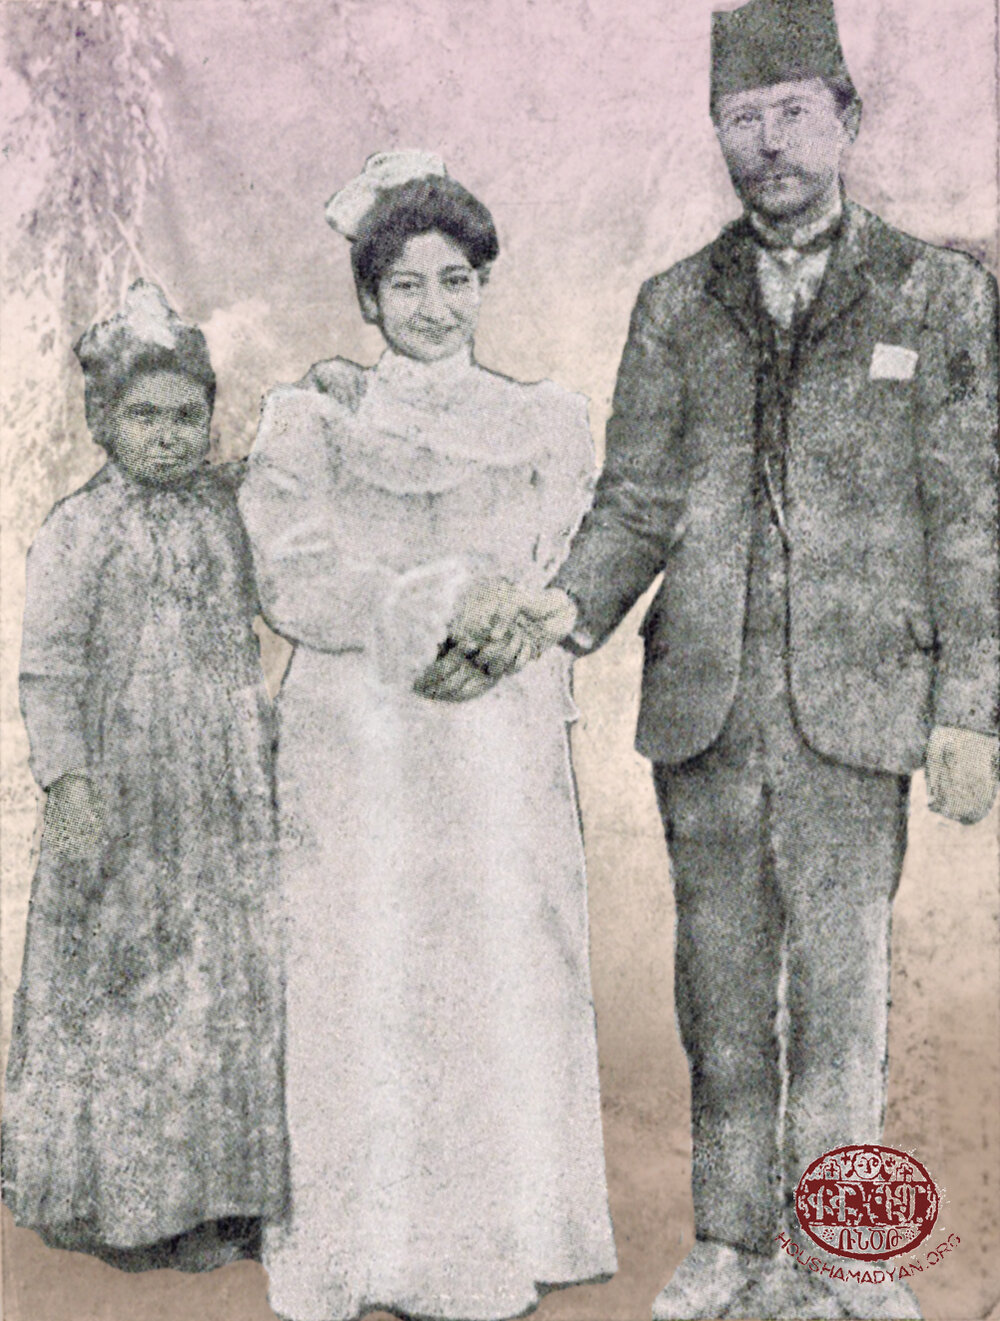 Düğün fotoğrafı, 1908. Misak Keleşyan ve Srpuhi Keleşyan (Baridyan)